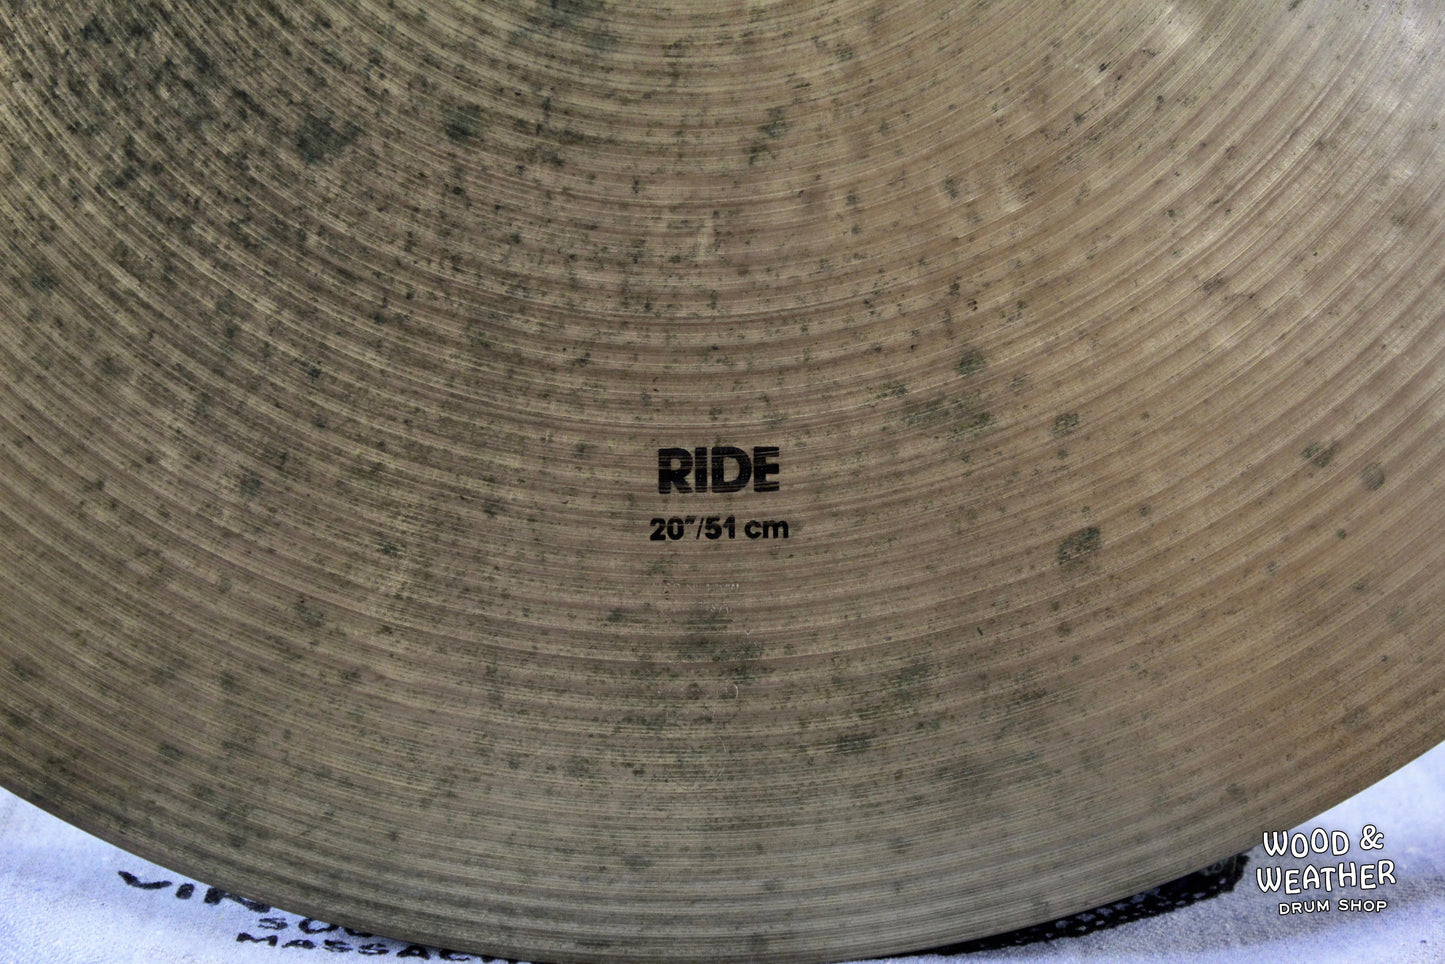 1990s Zildjian 20" K Series Ride Cymbal 2430g